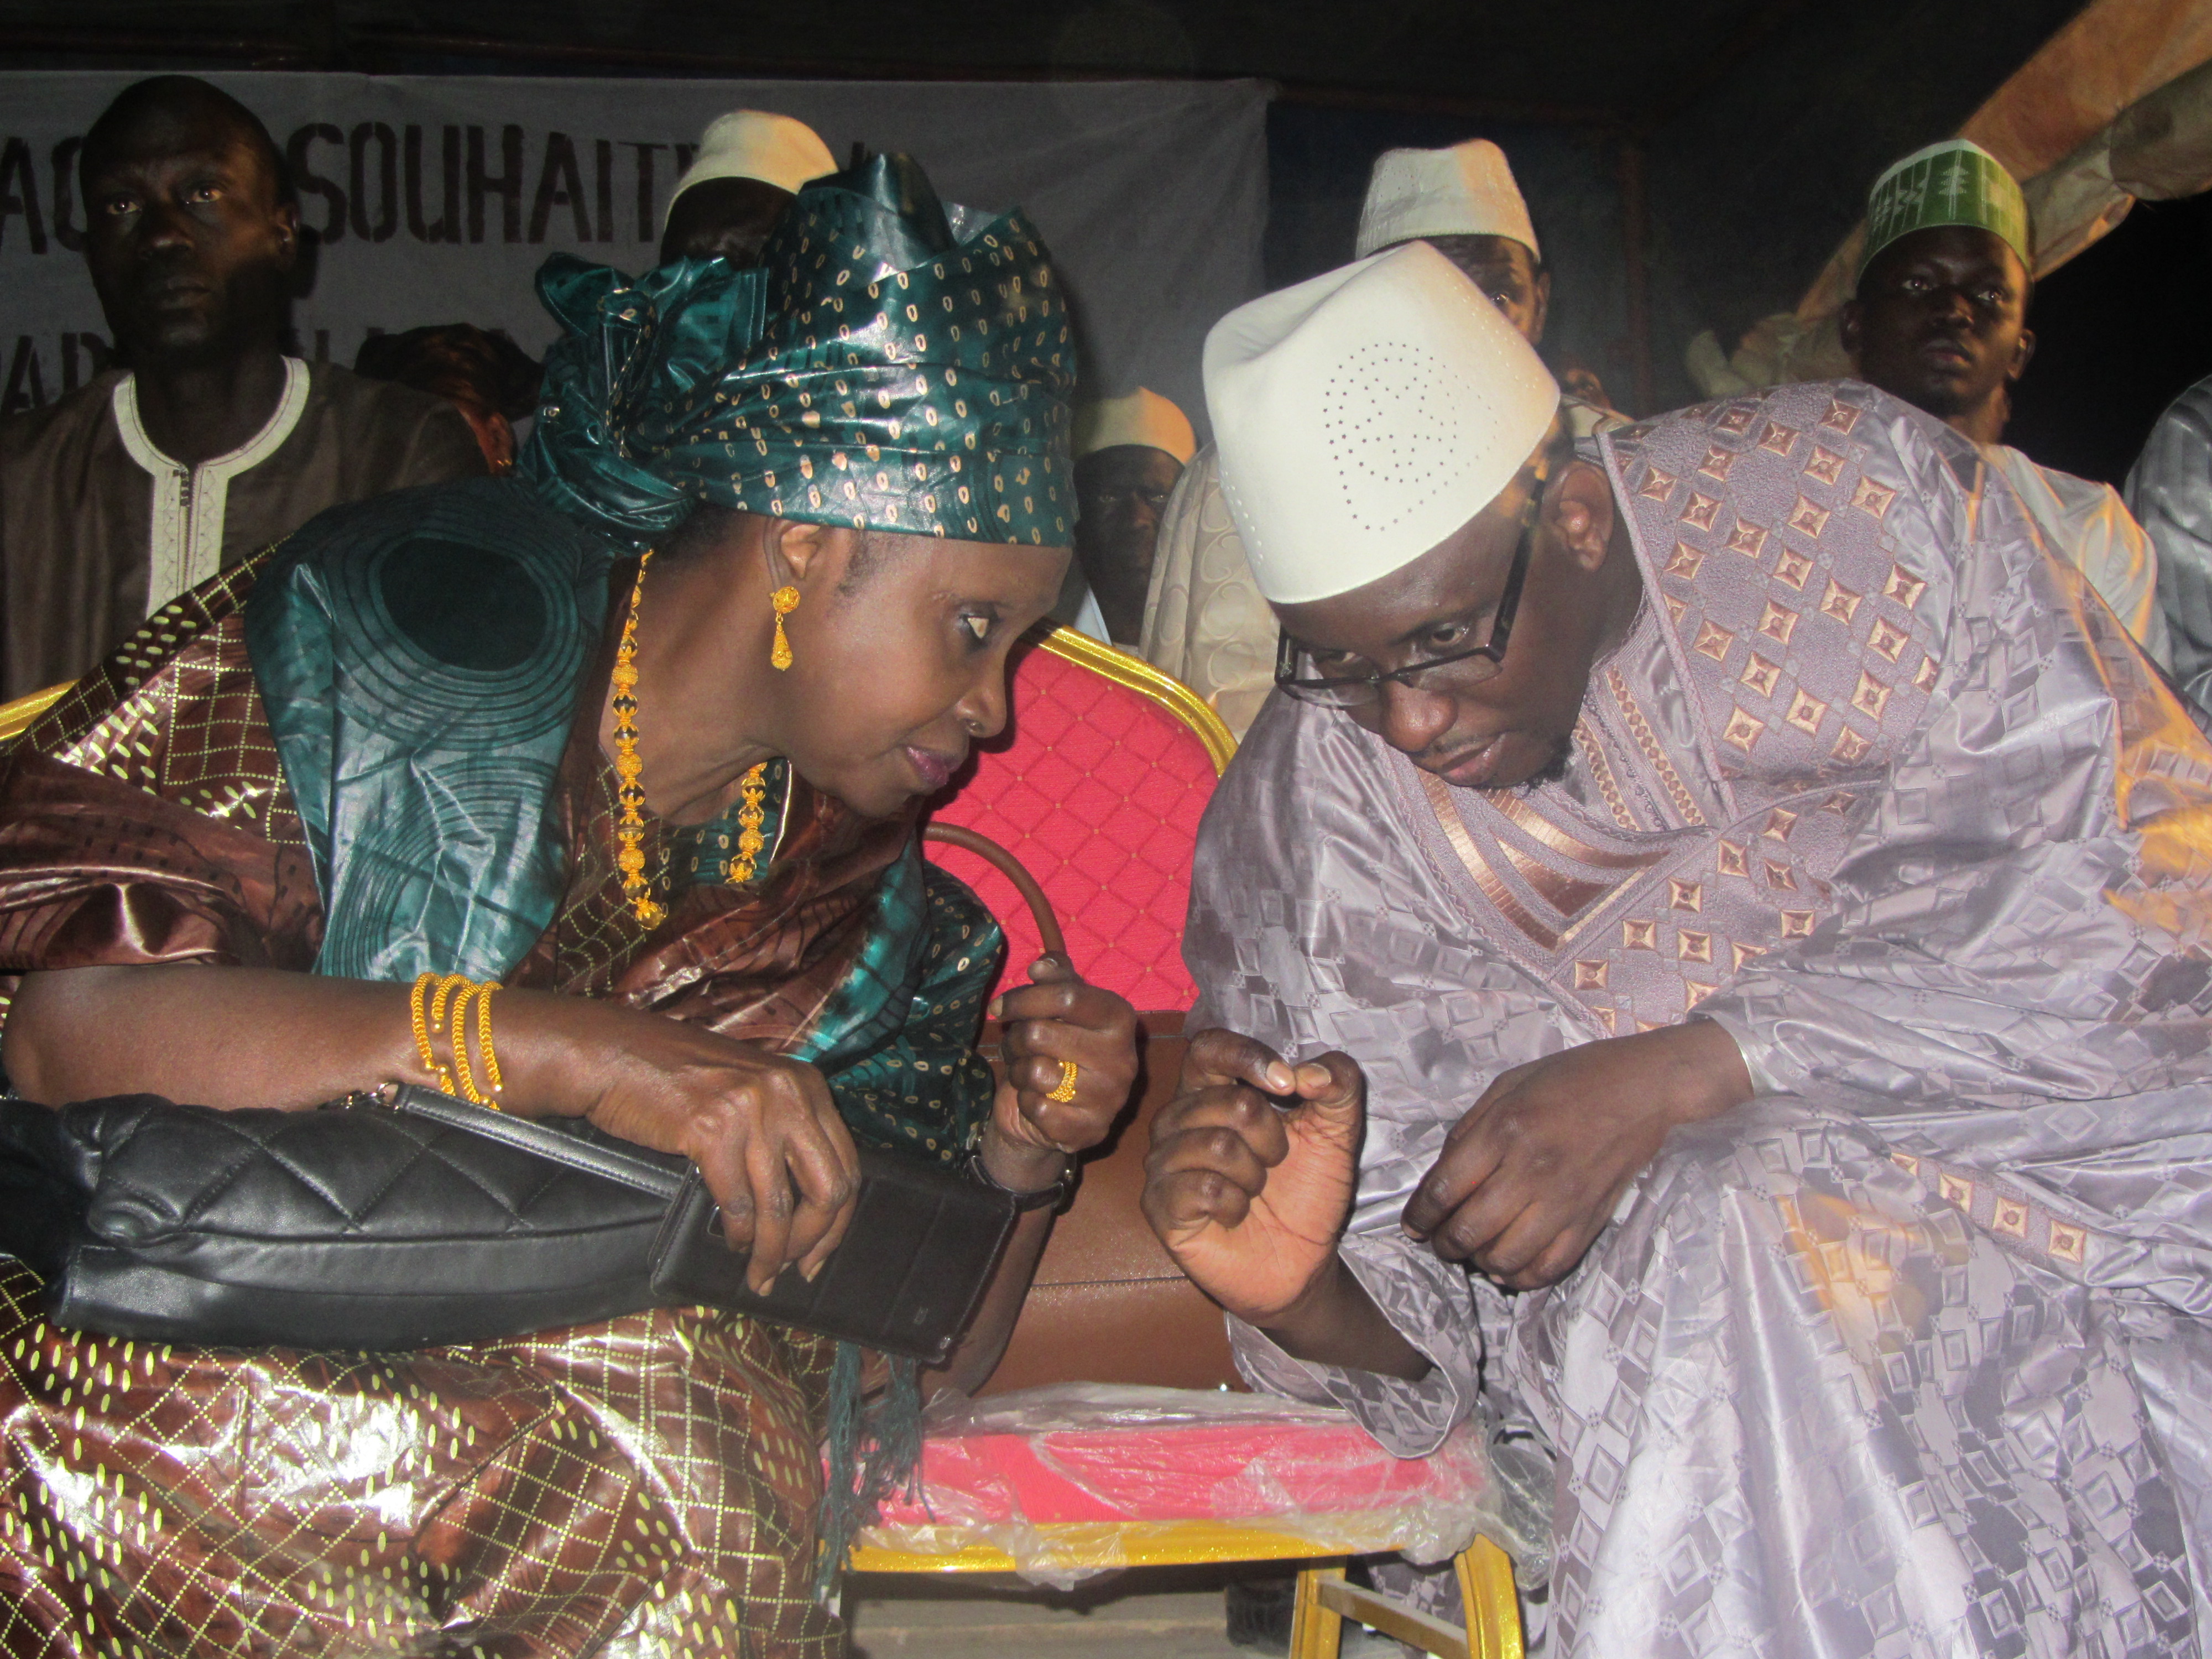 Photos - Lancement du mouvement « Macky 2 » à Kaolack : Moustapha Diop déroule dans le Saloum